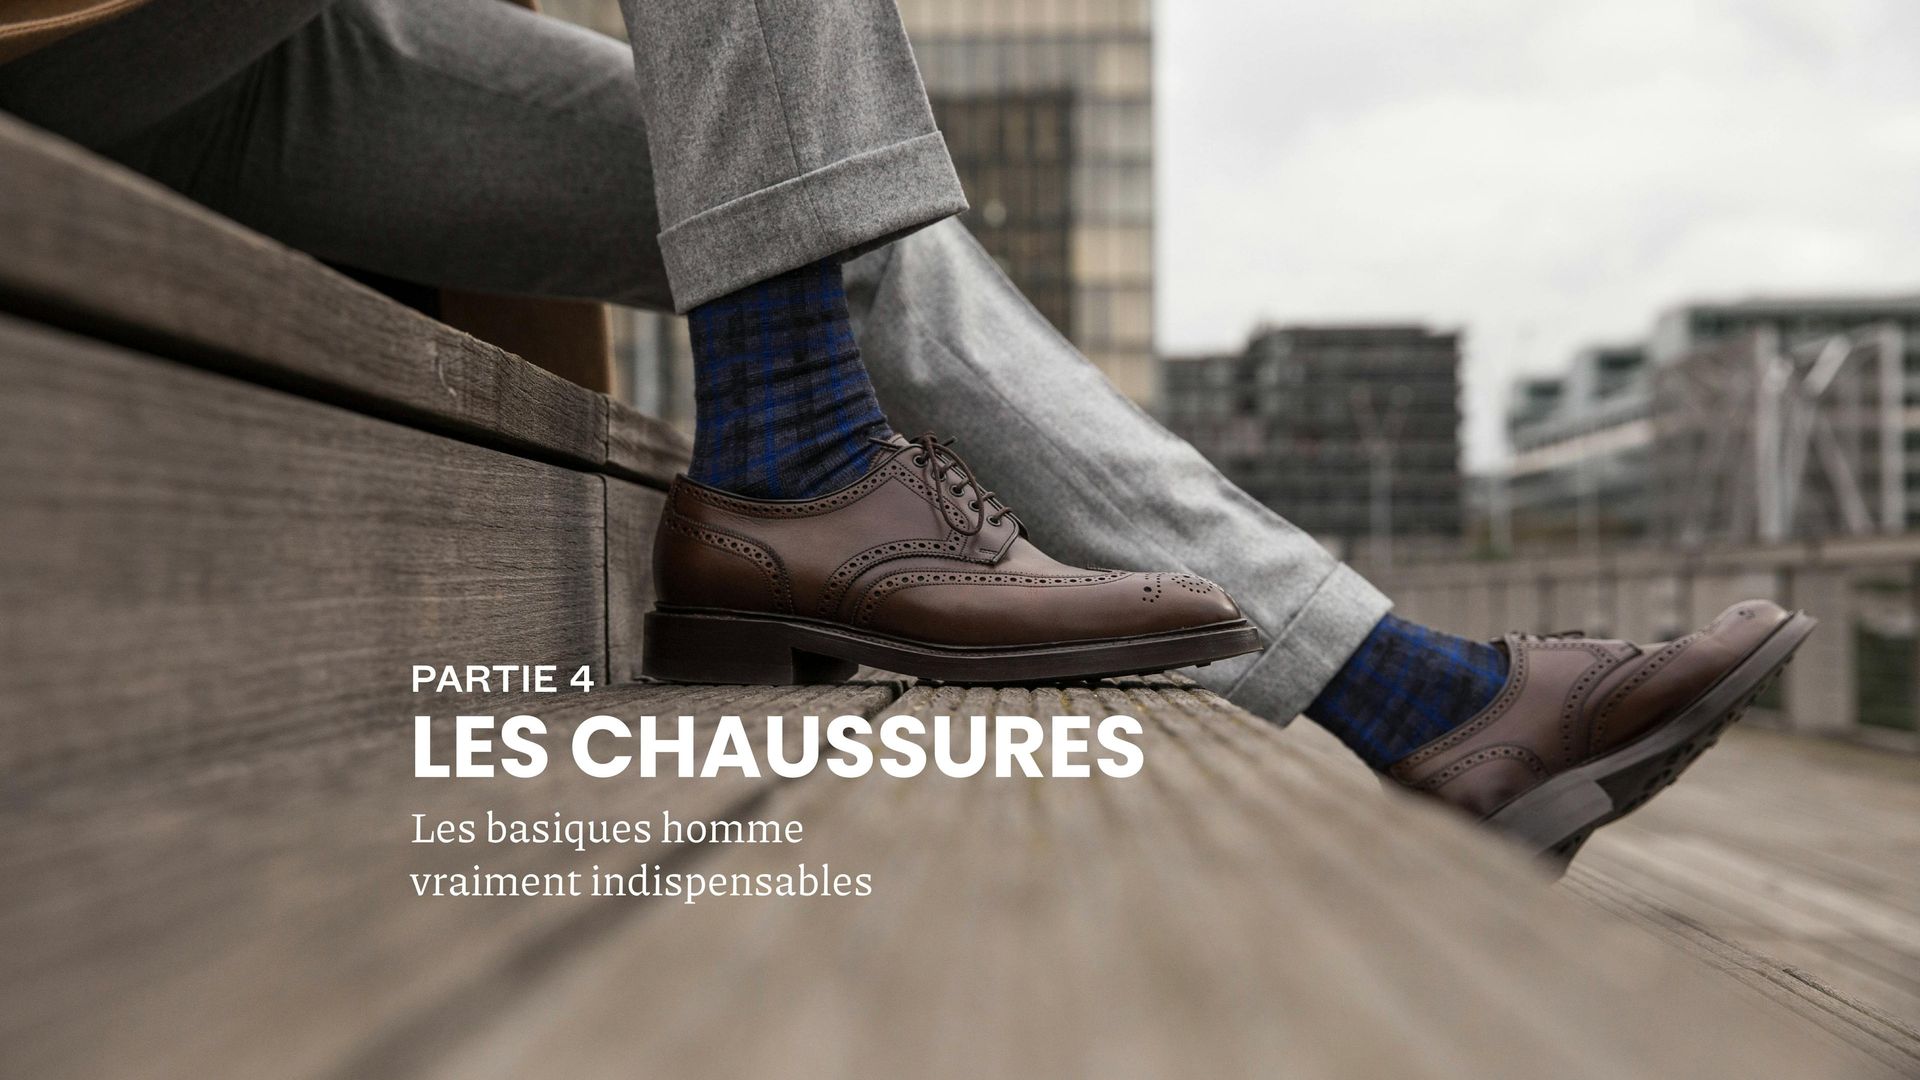 Chaussures homme : nos conseils pour bien les choisir porter et entretenir